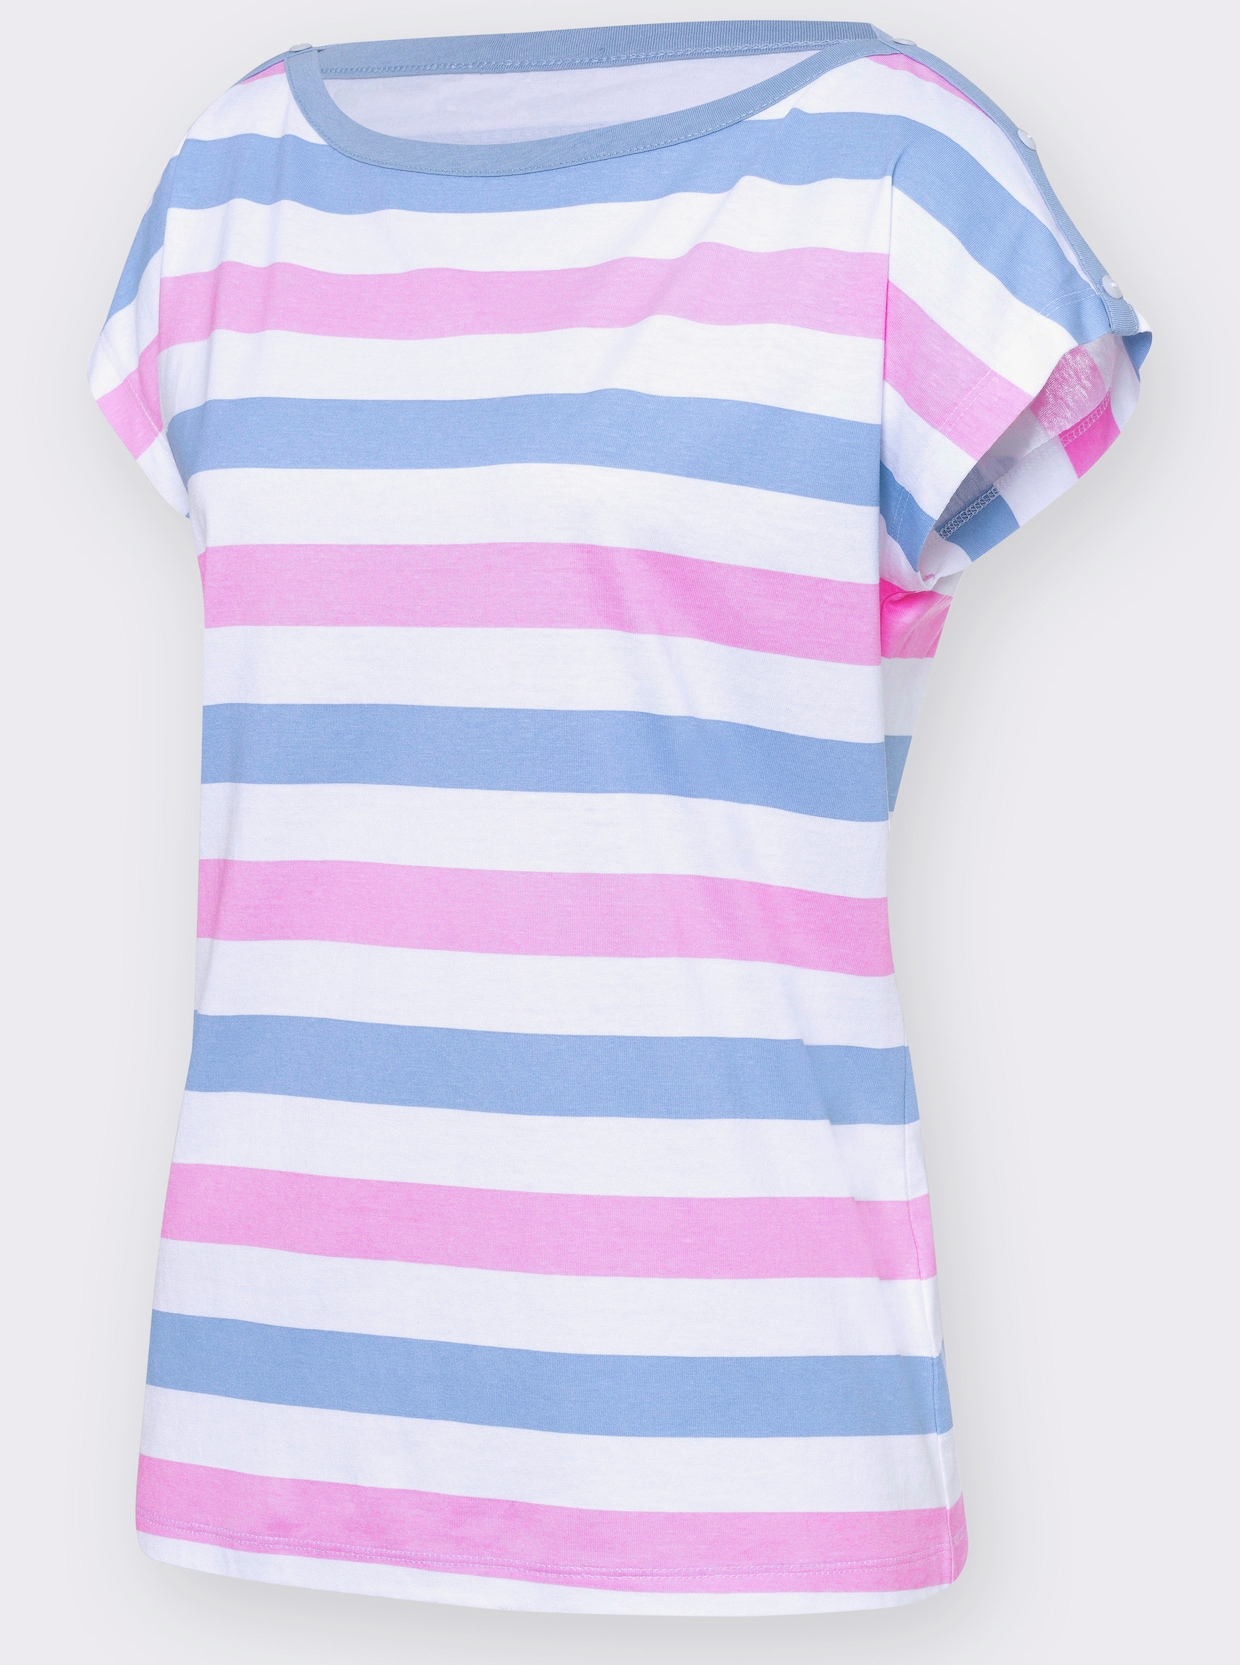 Pruhované tričko - ružovo-bledomodré pruhovanie